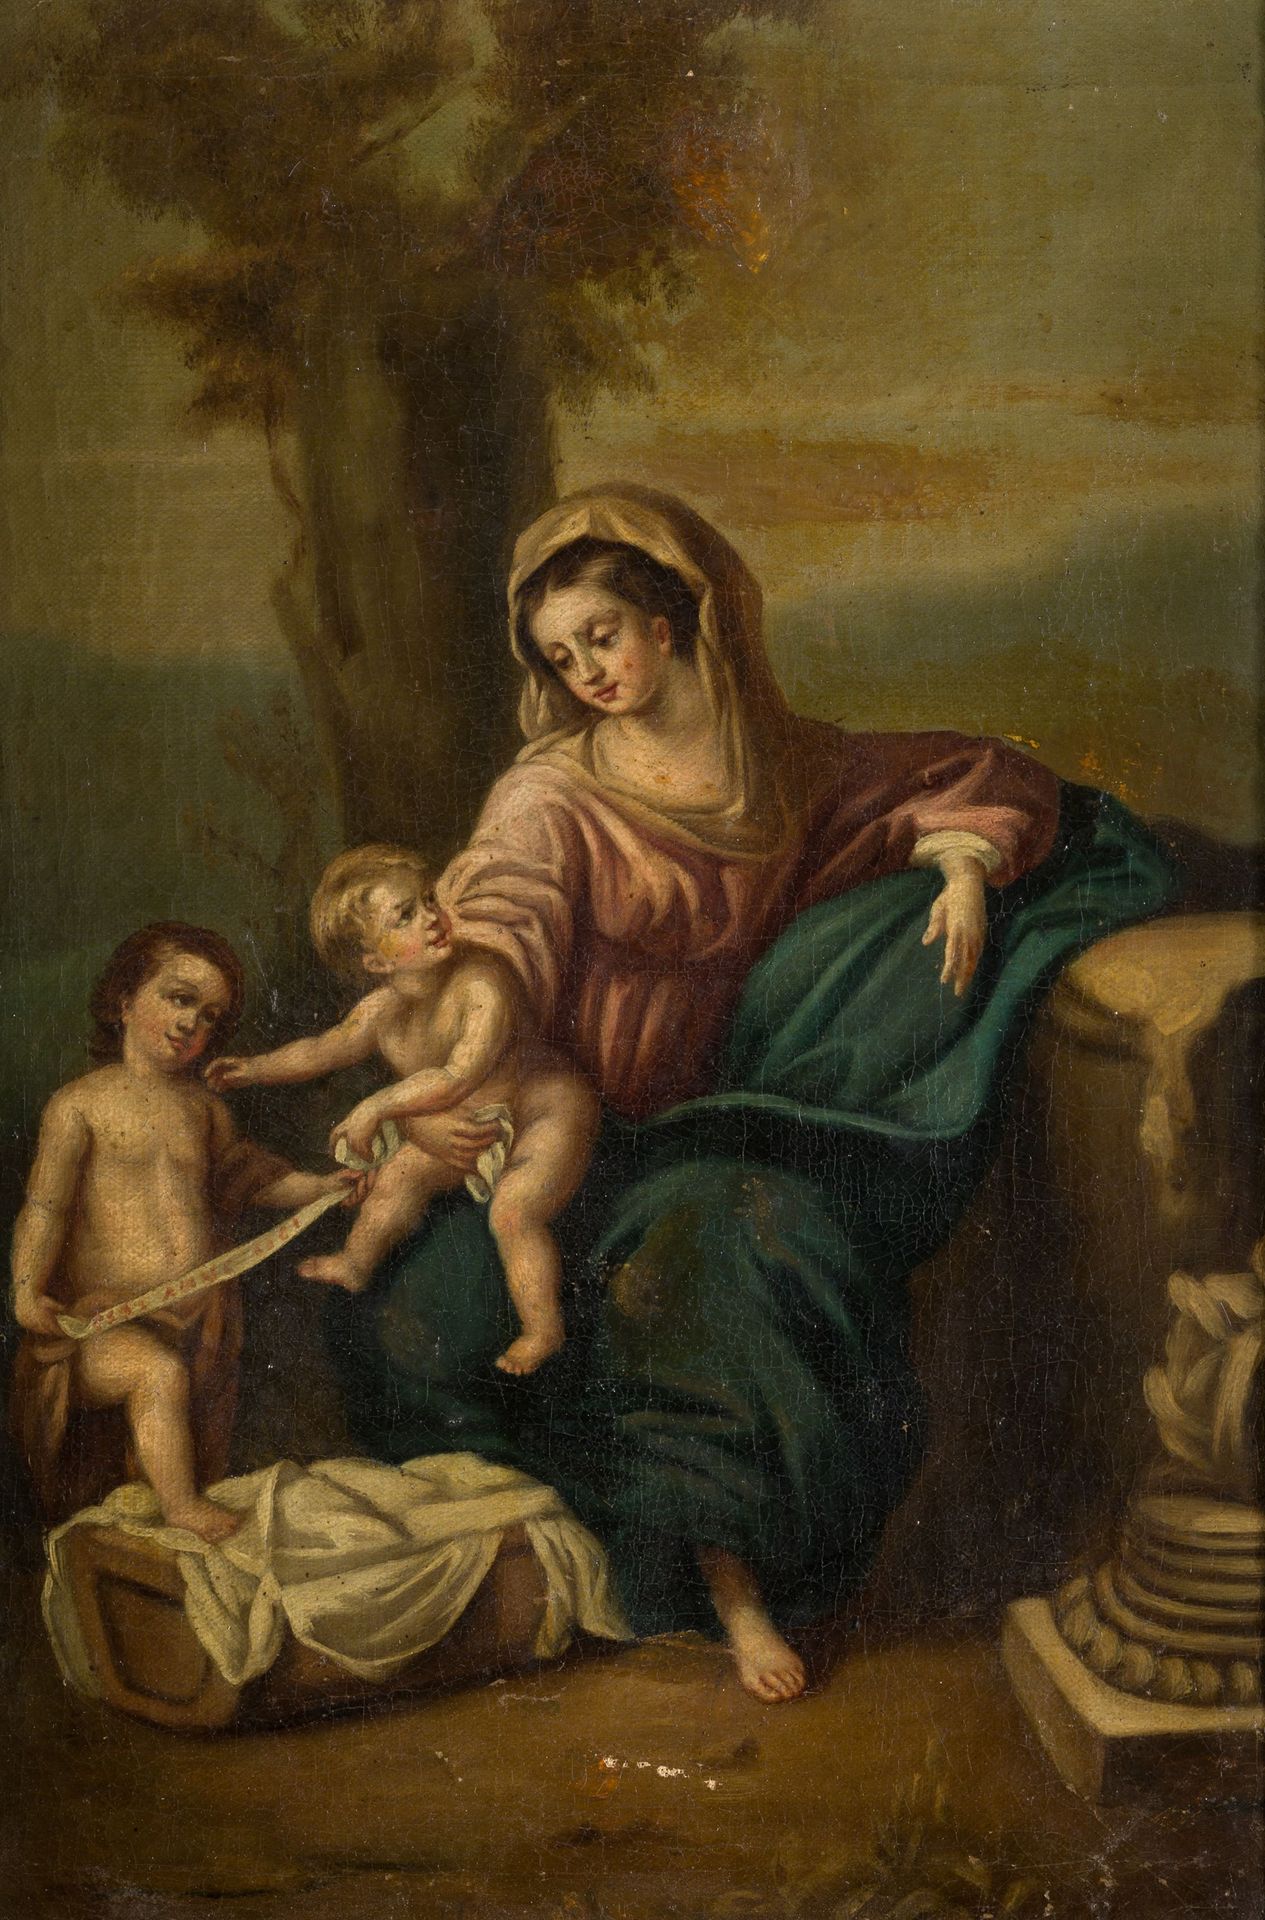 ANONYMOUS (C. 18th / C. 19th) “Holy Family" Öl auf Leinwand. 40 x 28,5 cm